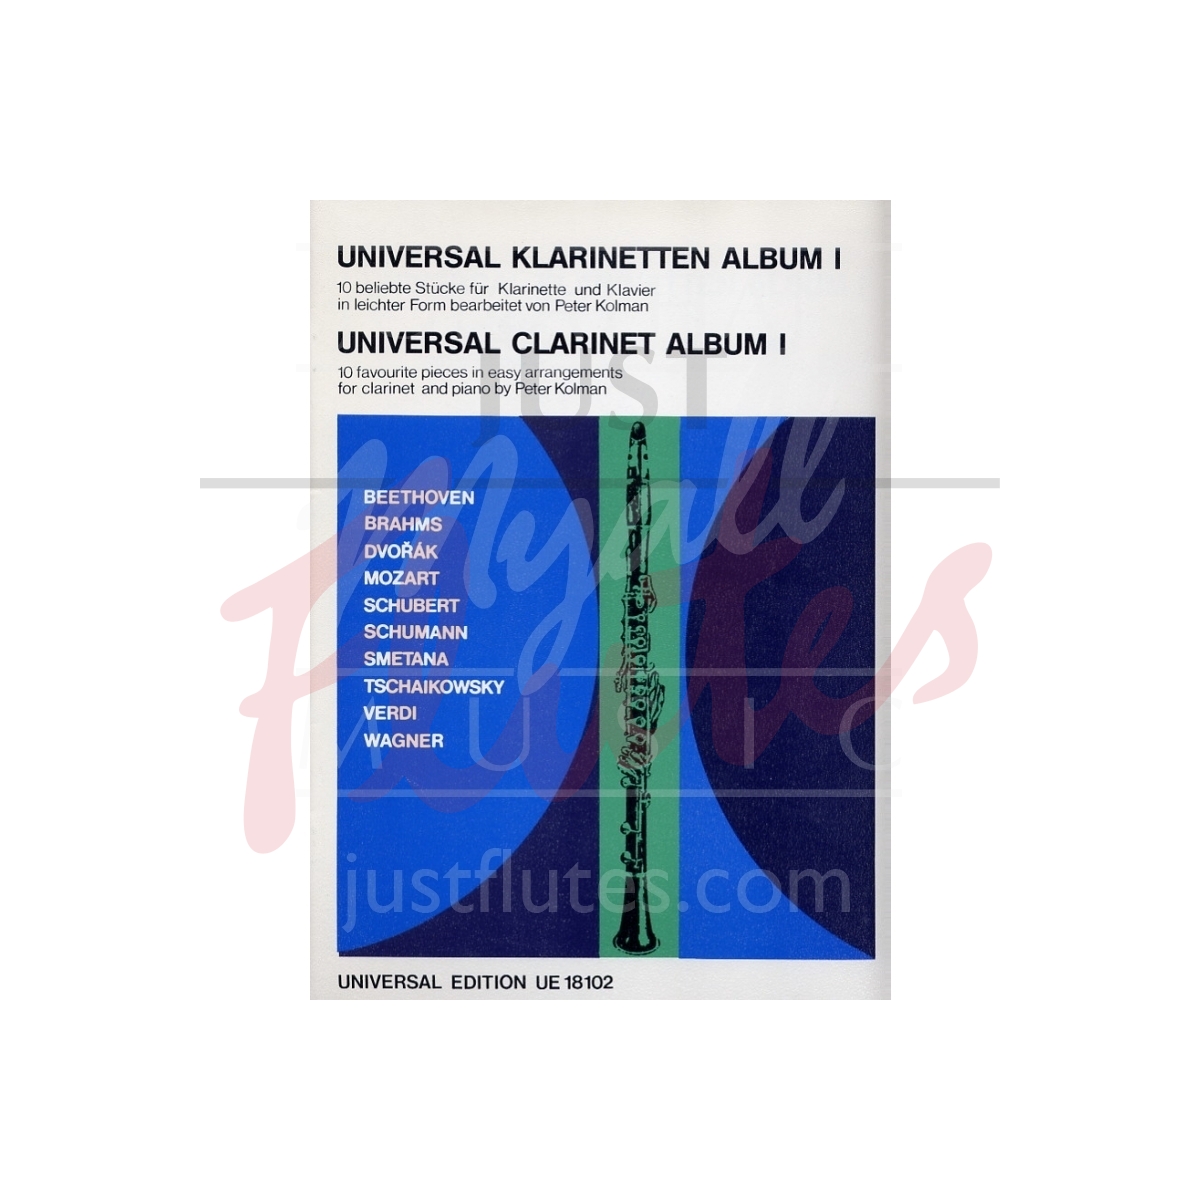 Universal Clarinet Album 1